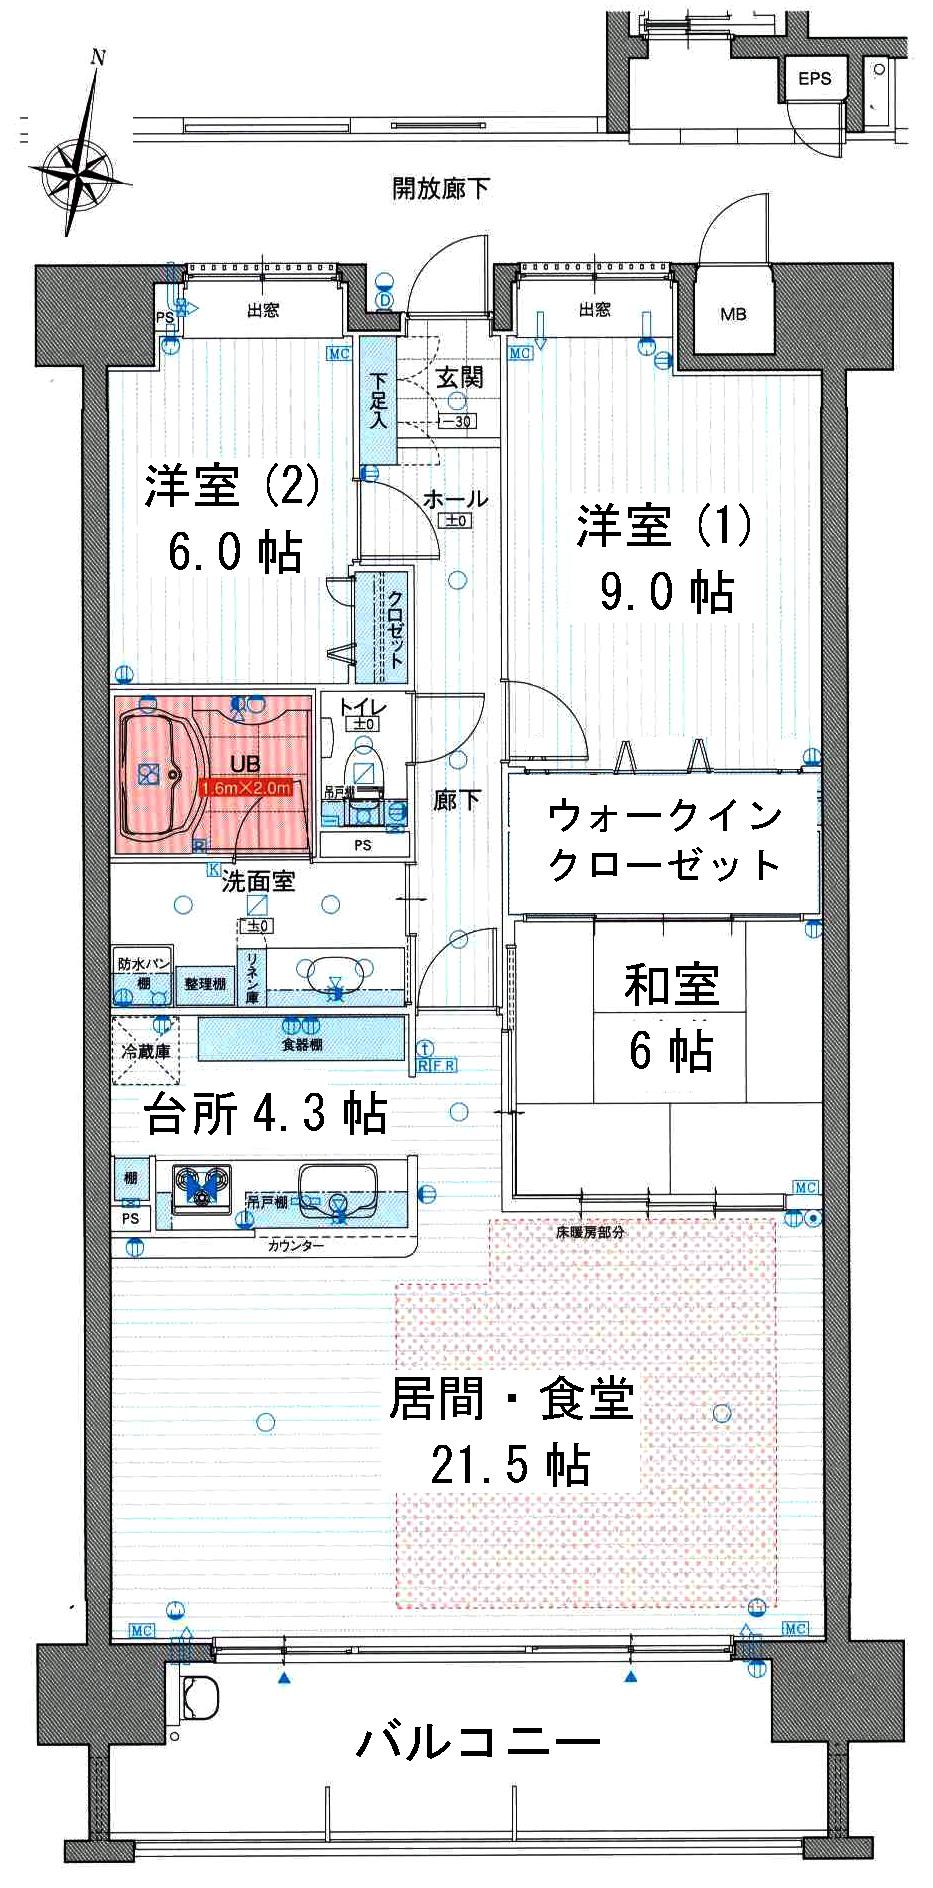 Floor plan. 3LDK, Price 32,800,000 yen, Footprint 100.63 sq m , Between the balcony area 15 sq m floor plan